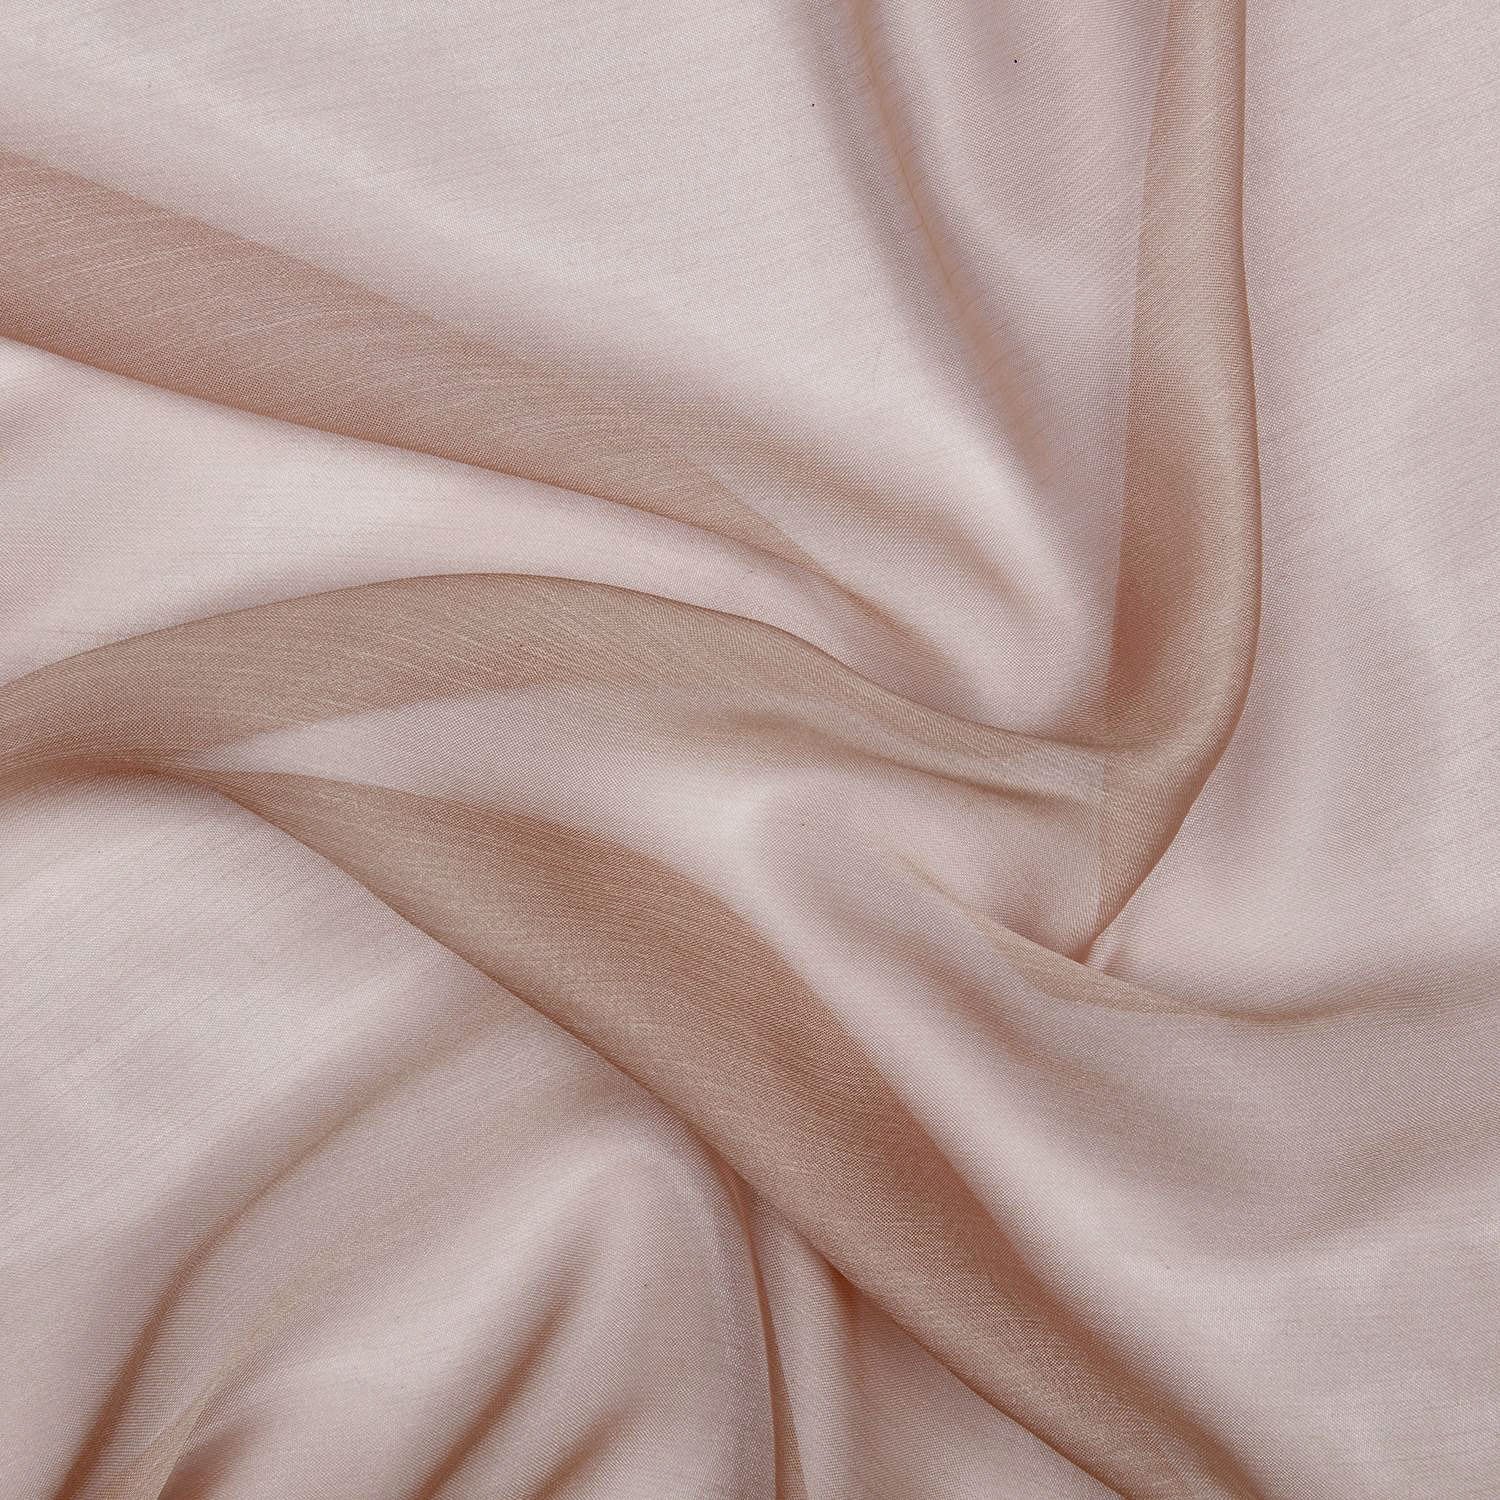 Soft Velvet Dusky Pink / Sage Ribbon With Gold / Silver Speckled